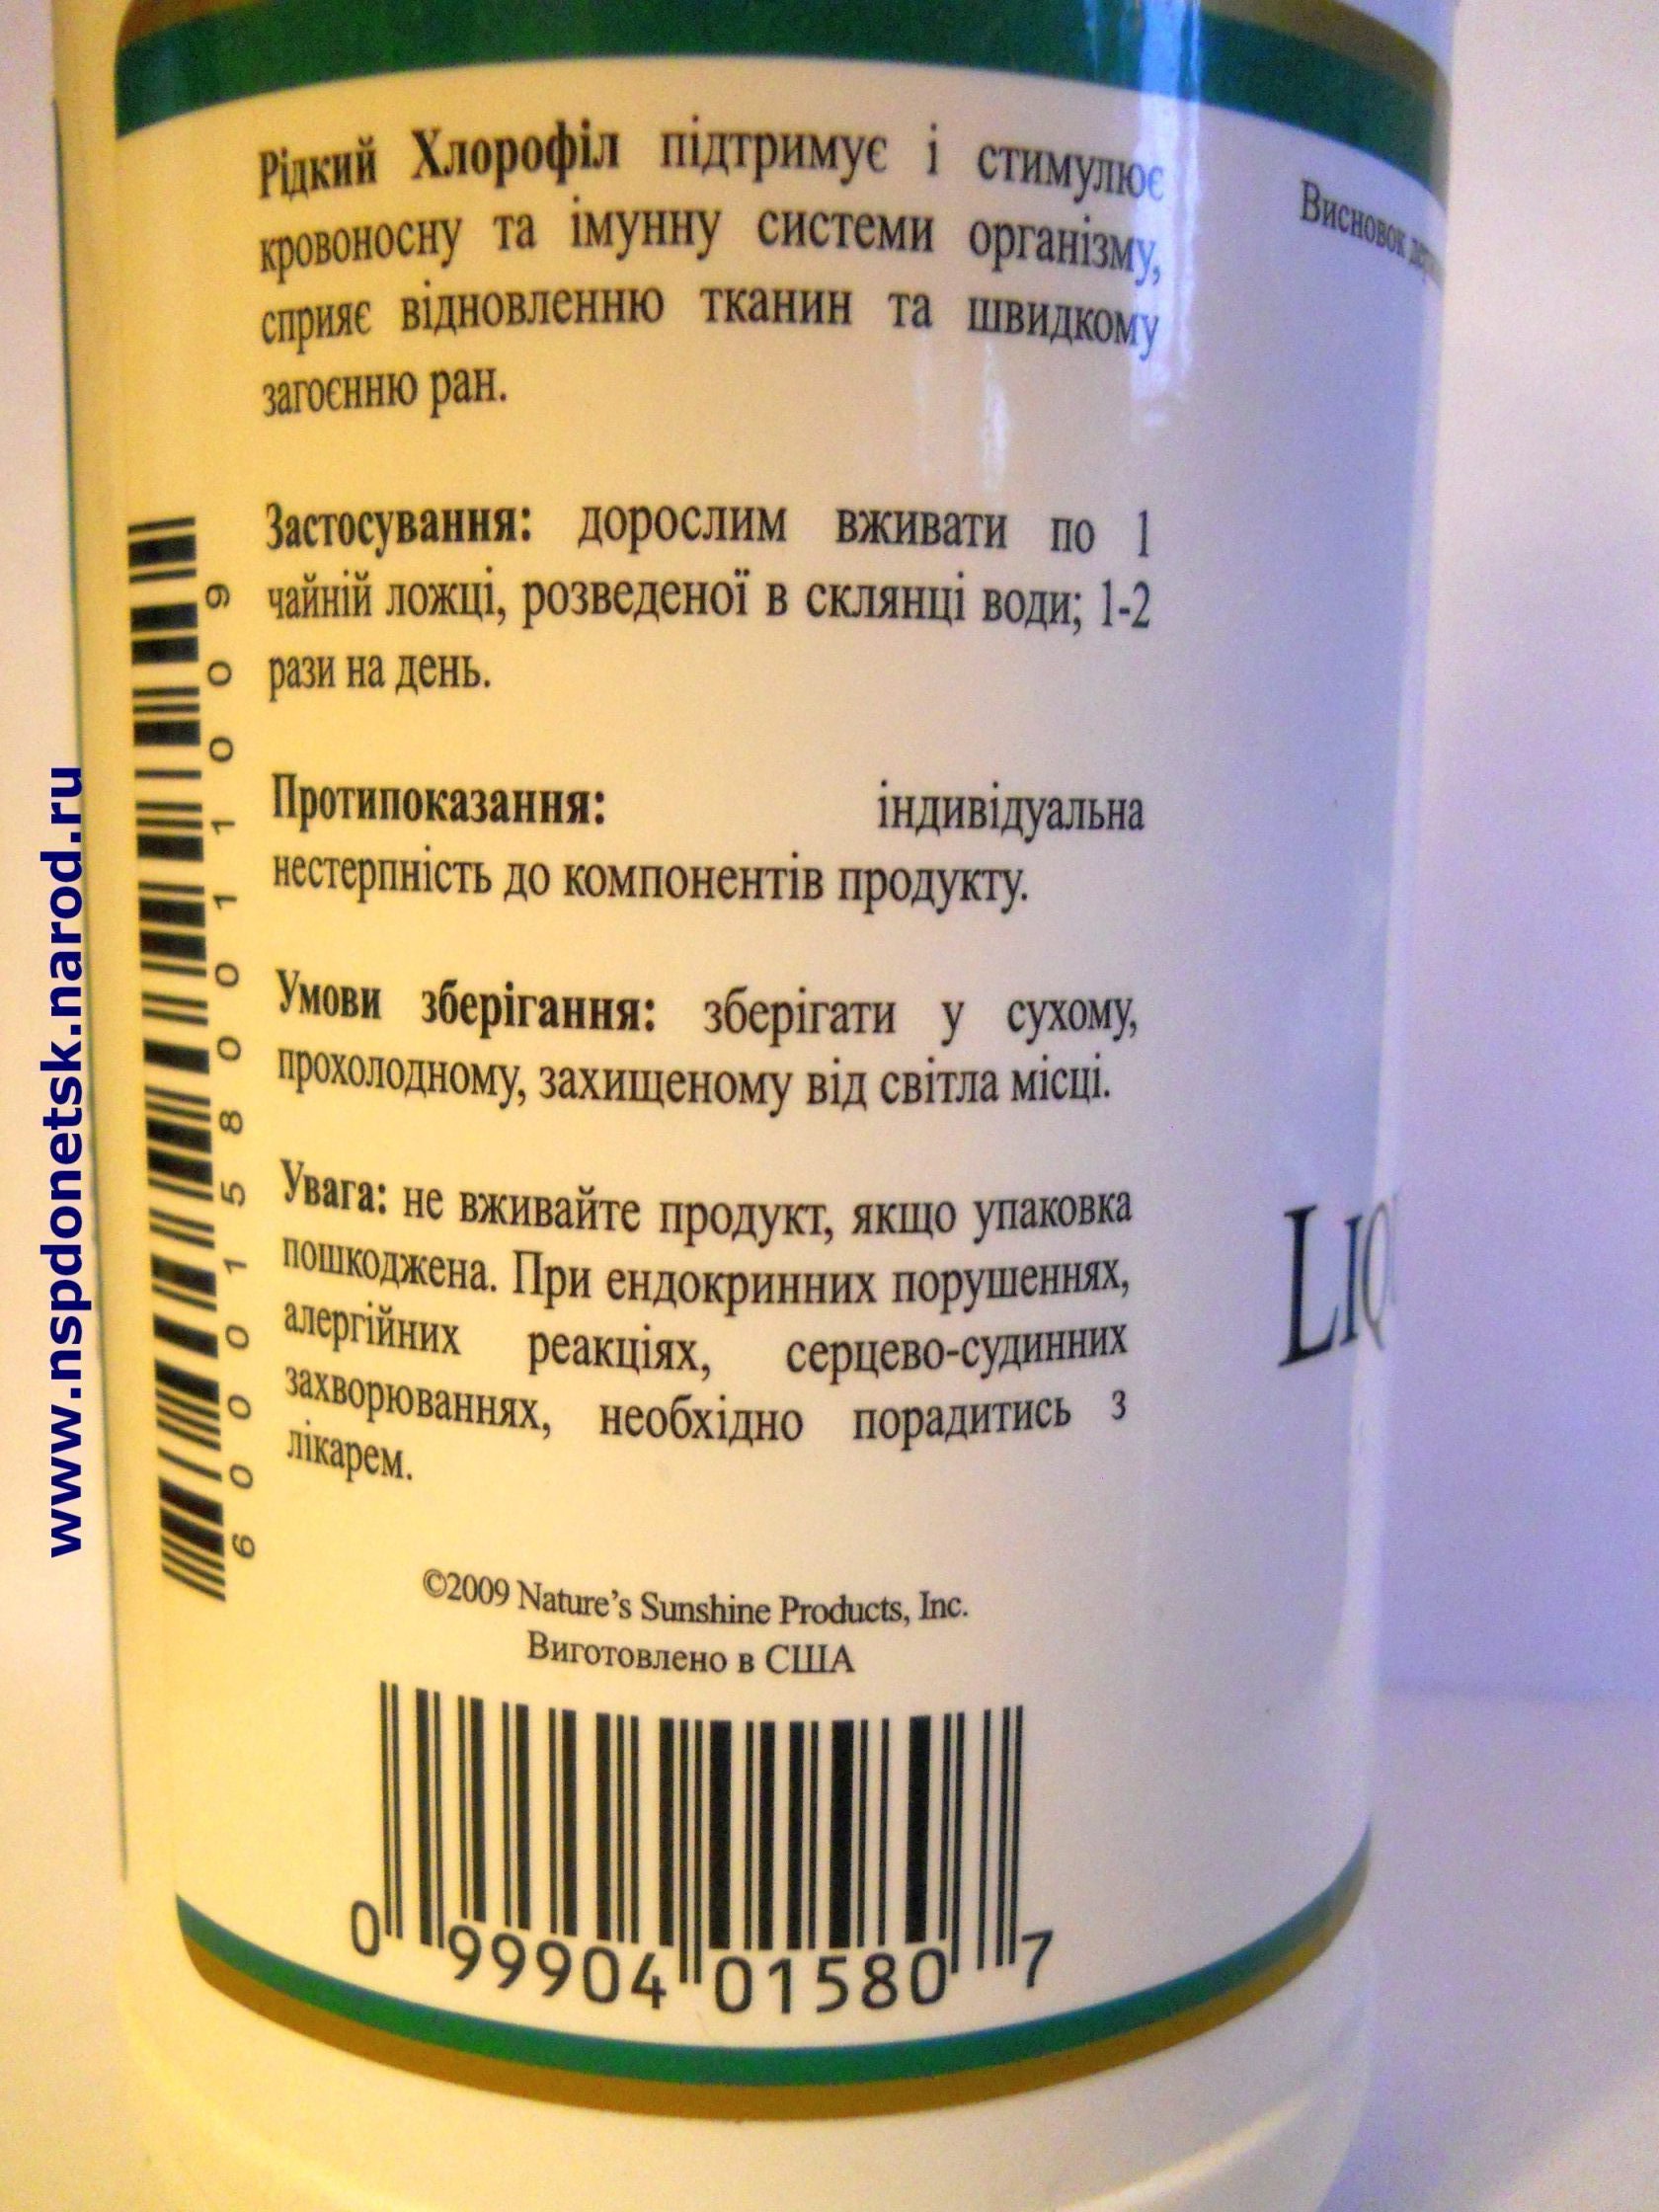 Жидкий хлорофилл - Chlorophyll liquid в Донецке - фотография 3